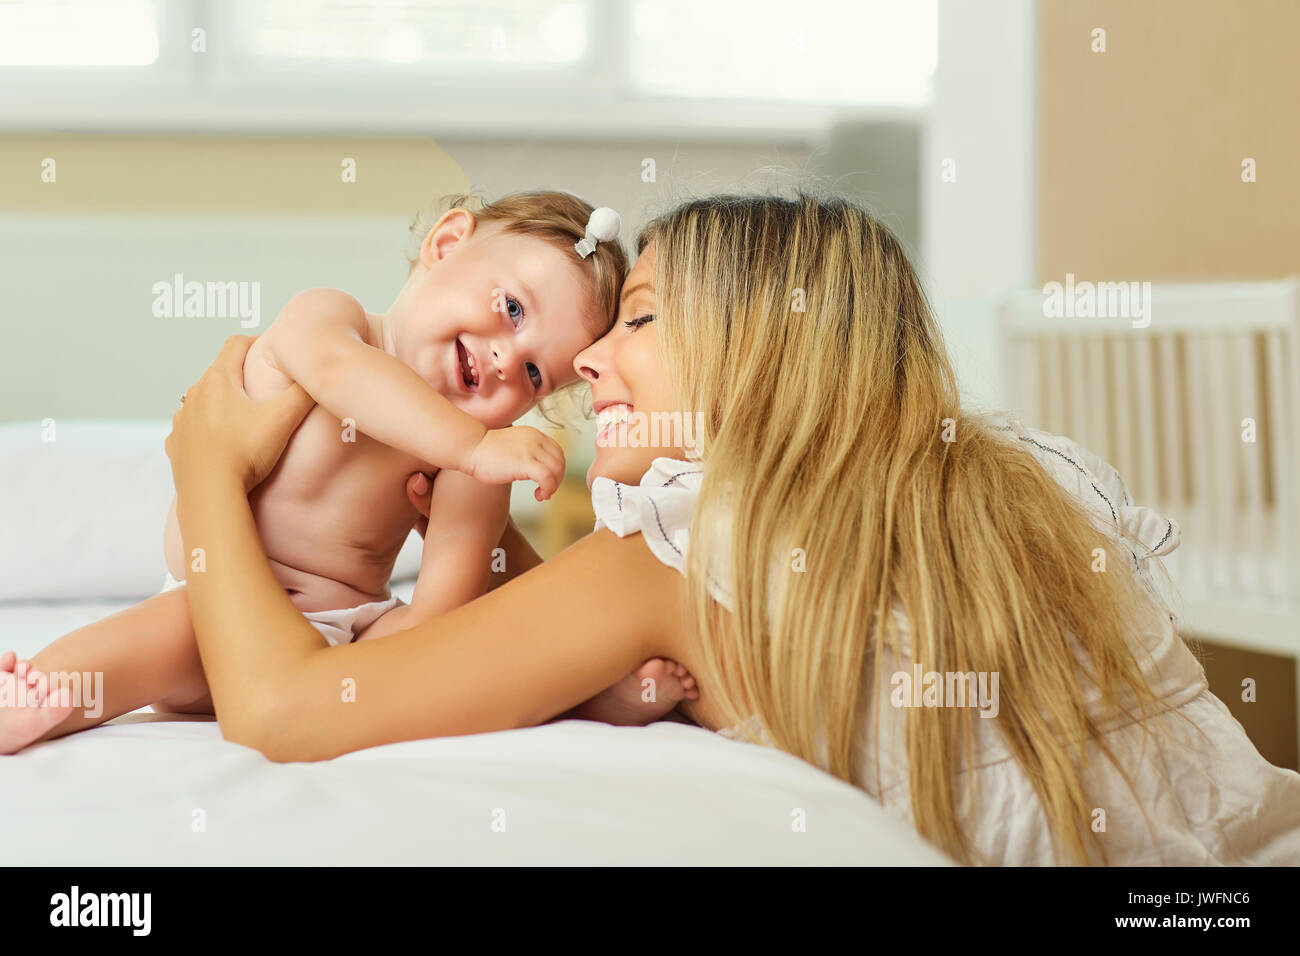 La madre y el bebé en un pañal jugar abrazando en una cama en el interior. Foto de stock